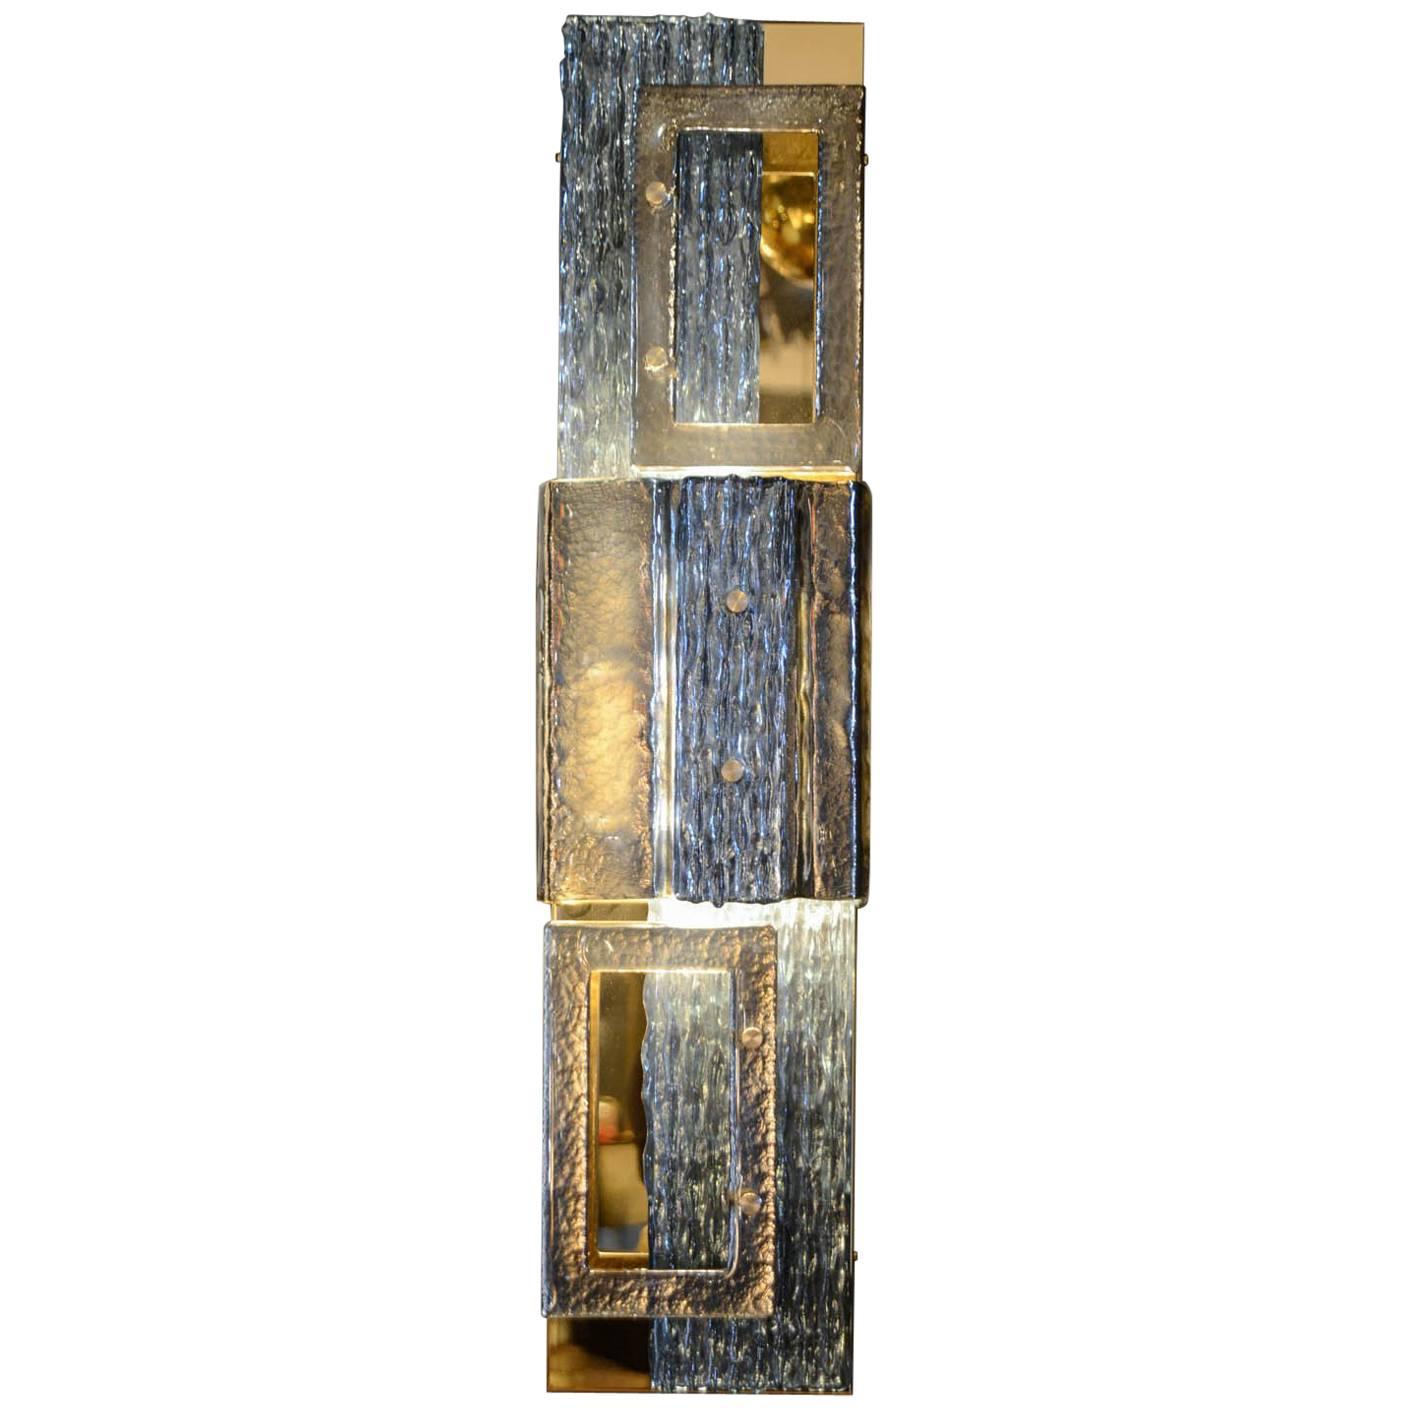 Glustin Luminaires Creation Brass and Murano Glass Panels